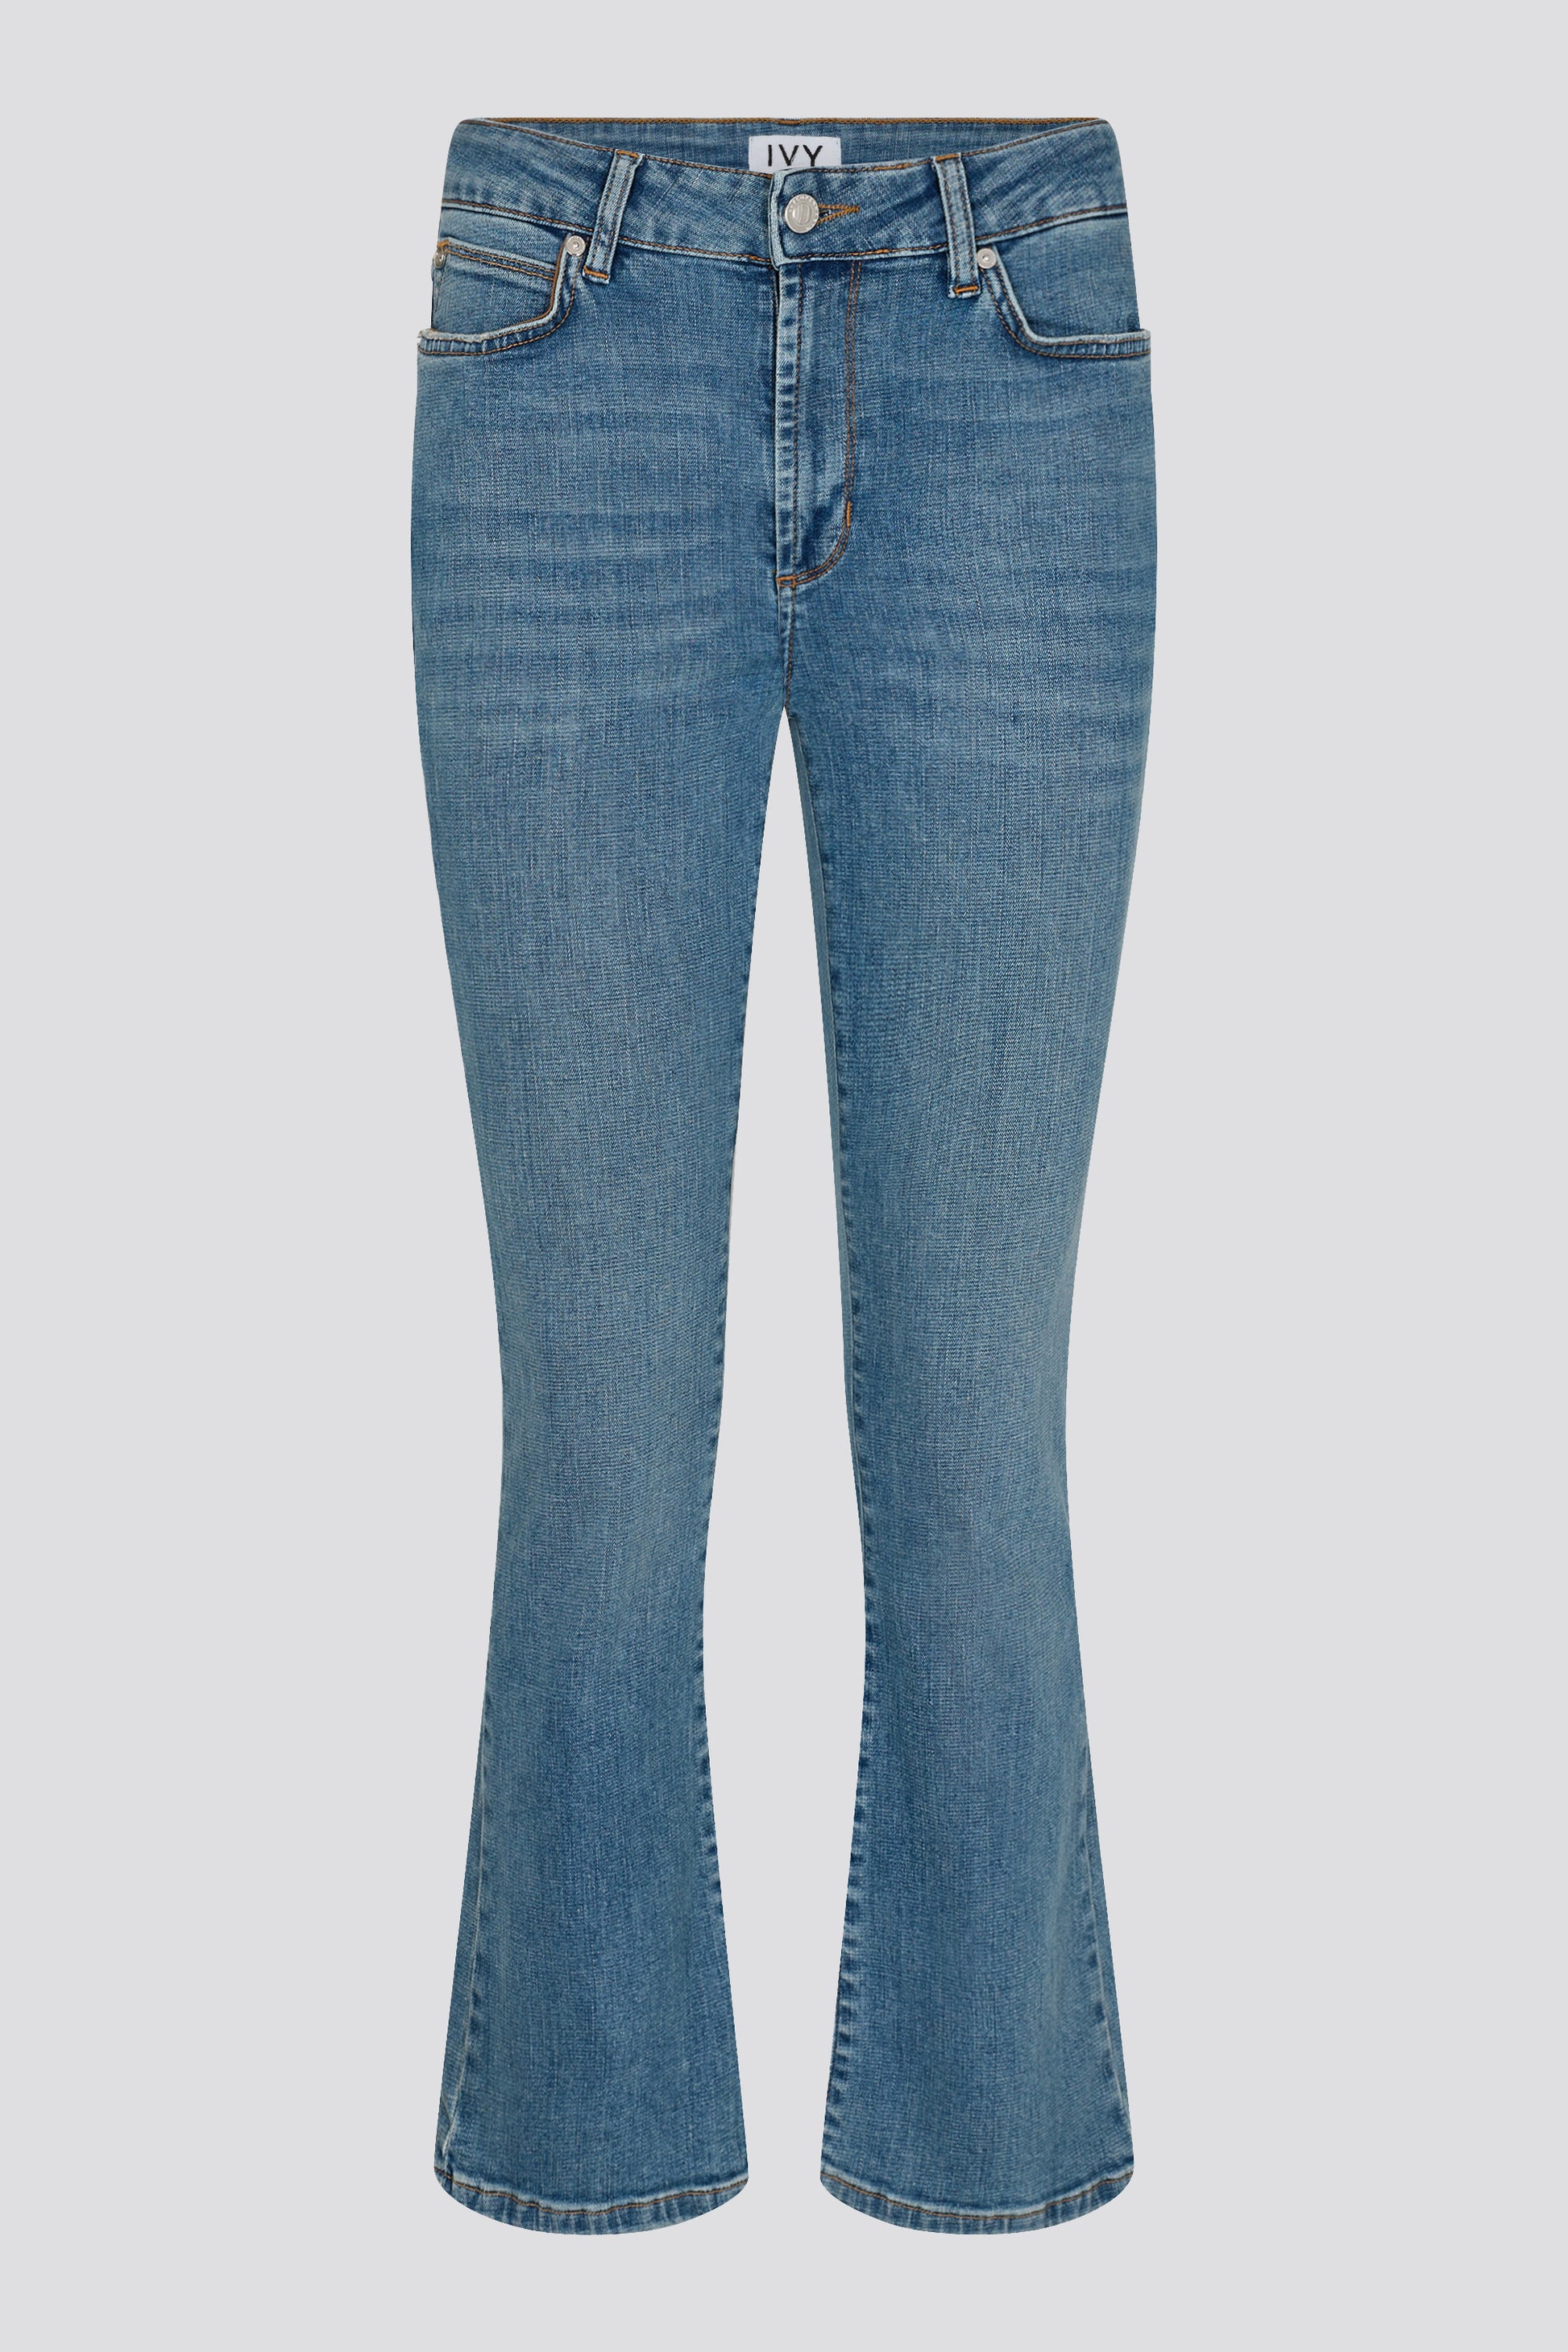 IVY Copenhagen IVY-Johanna Jeans Wash Port Louis Jeans & Pants 51 Denim Blue